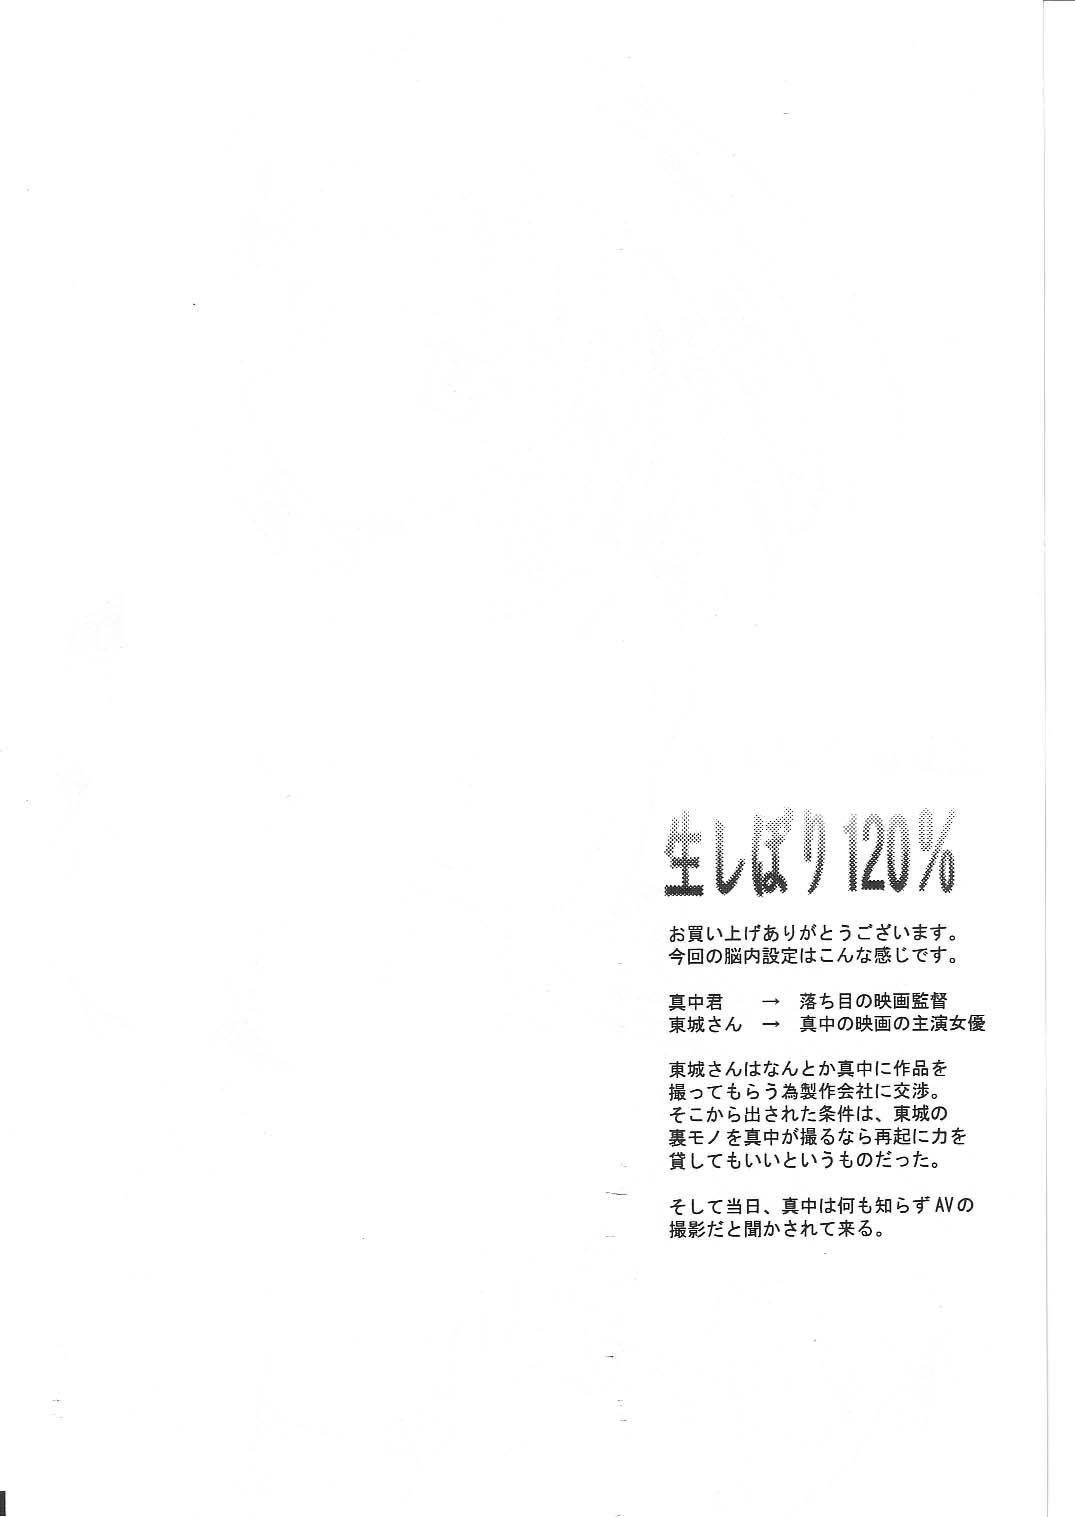 Jerking Off Namashibori 120% - Ichigo 100 Pretty face Joven - Page 3